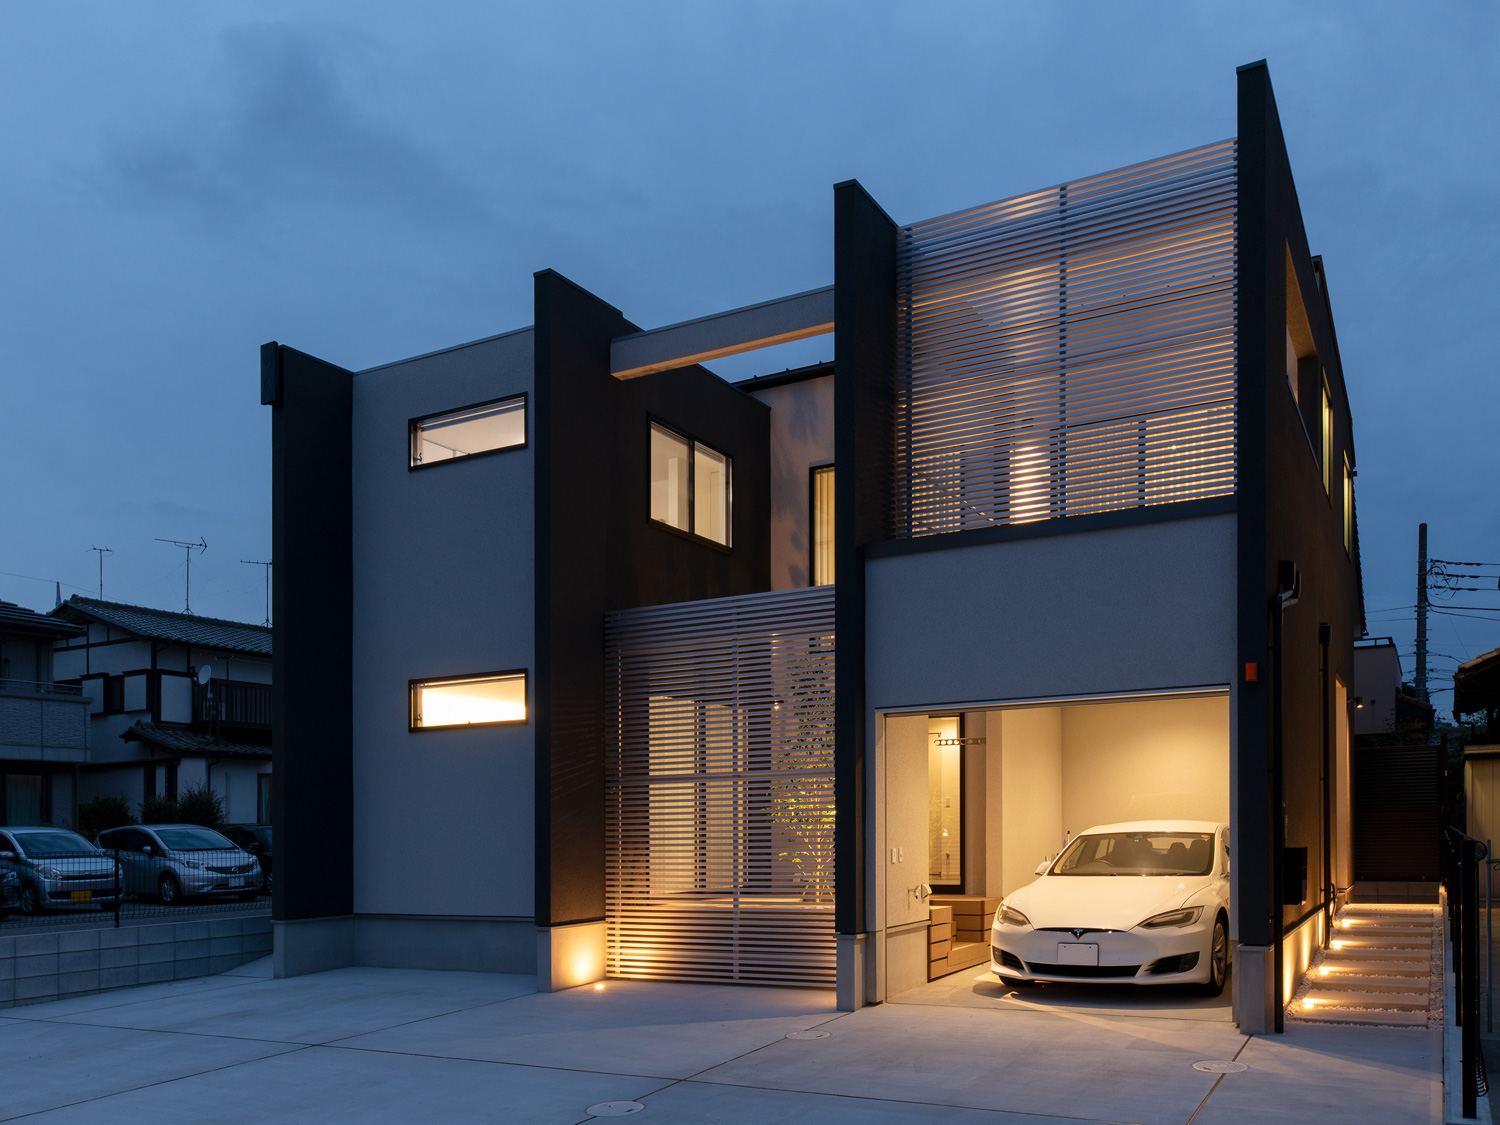 インナーガレージとアプローチが照明に照らされる住宅の外観・デザイン住宅